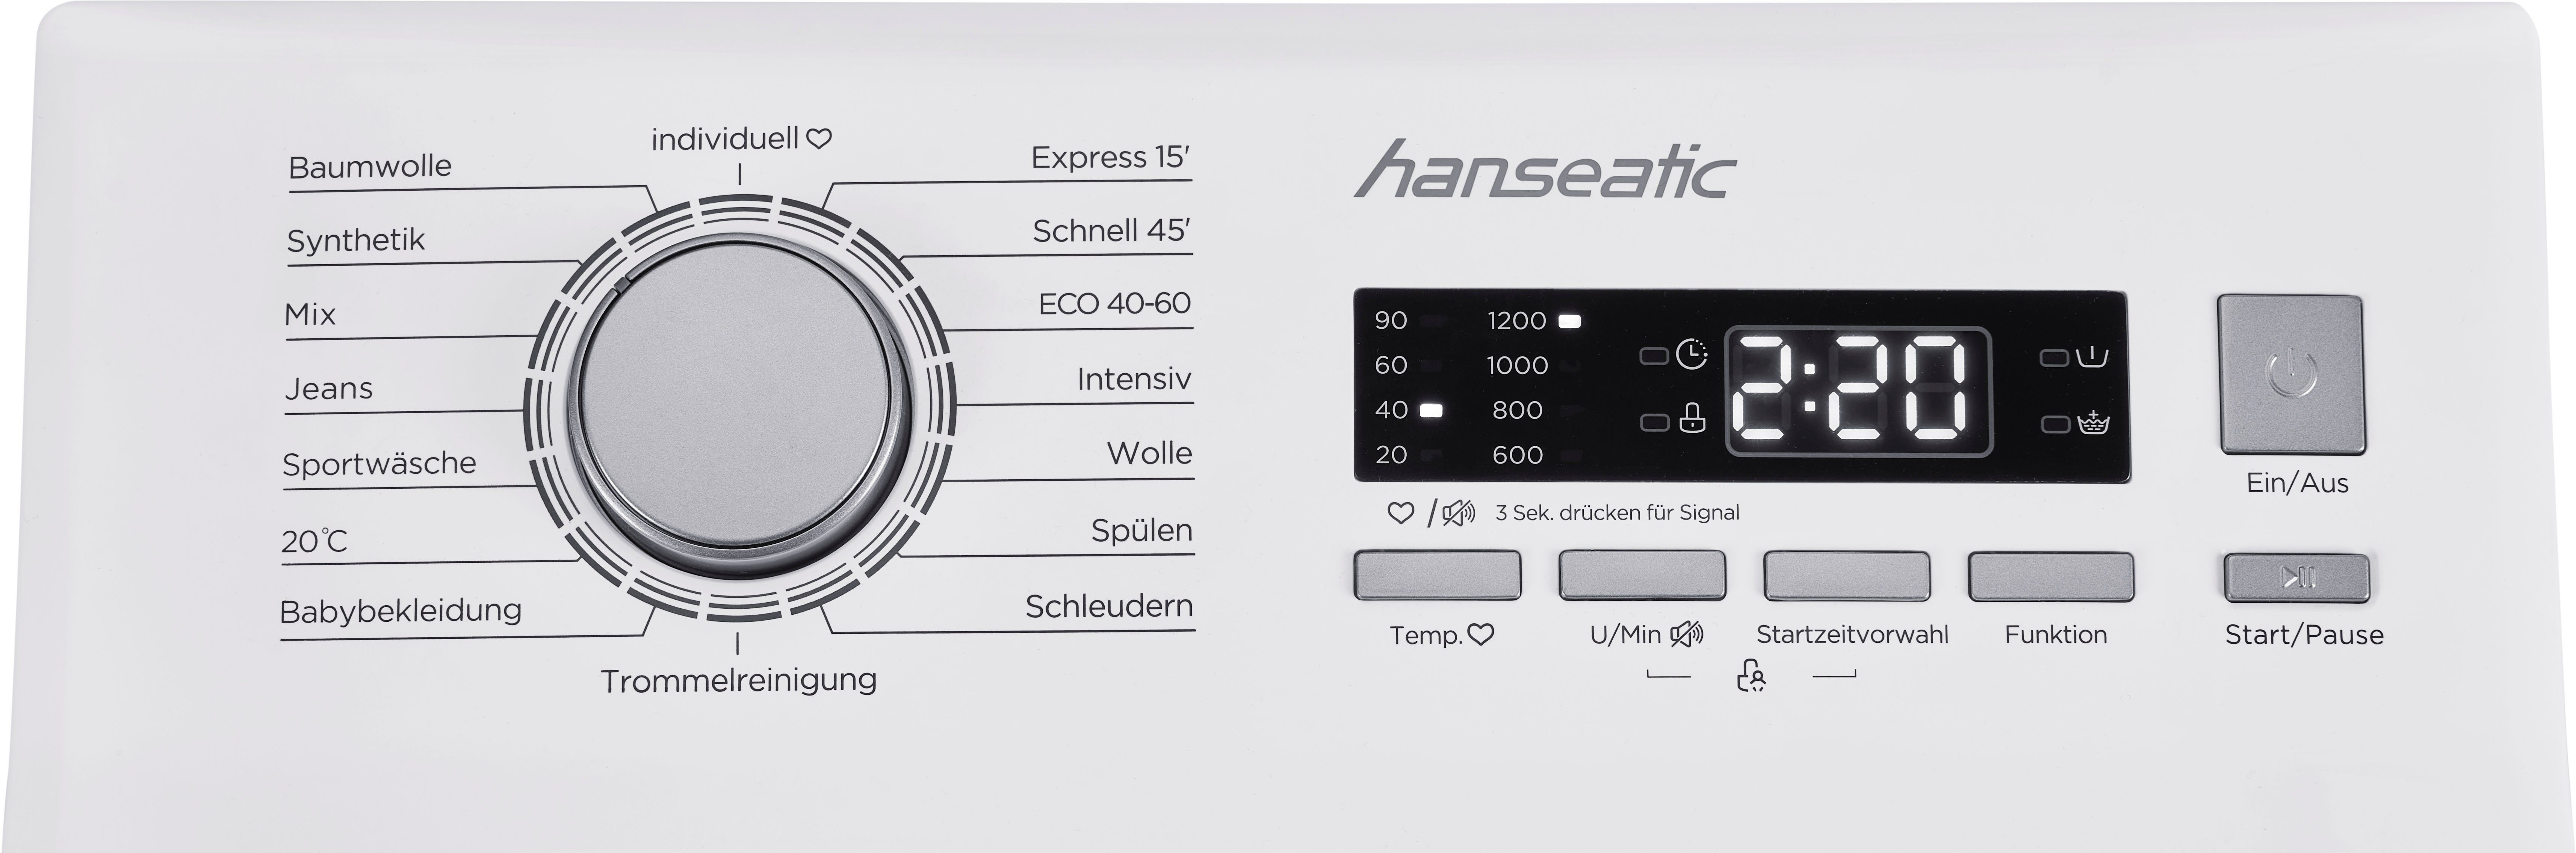 kg, Toplader Hanseatic 1200 7 Mengenautomatik, U/min, HTW712D, Waschmaschine Überlaufschutzsystem